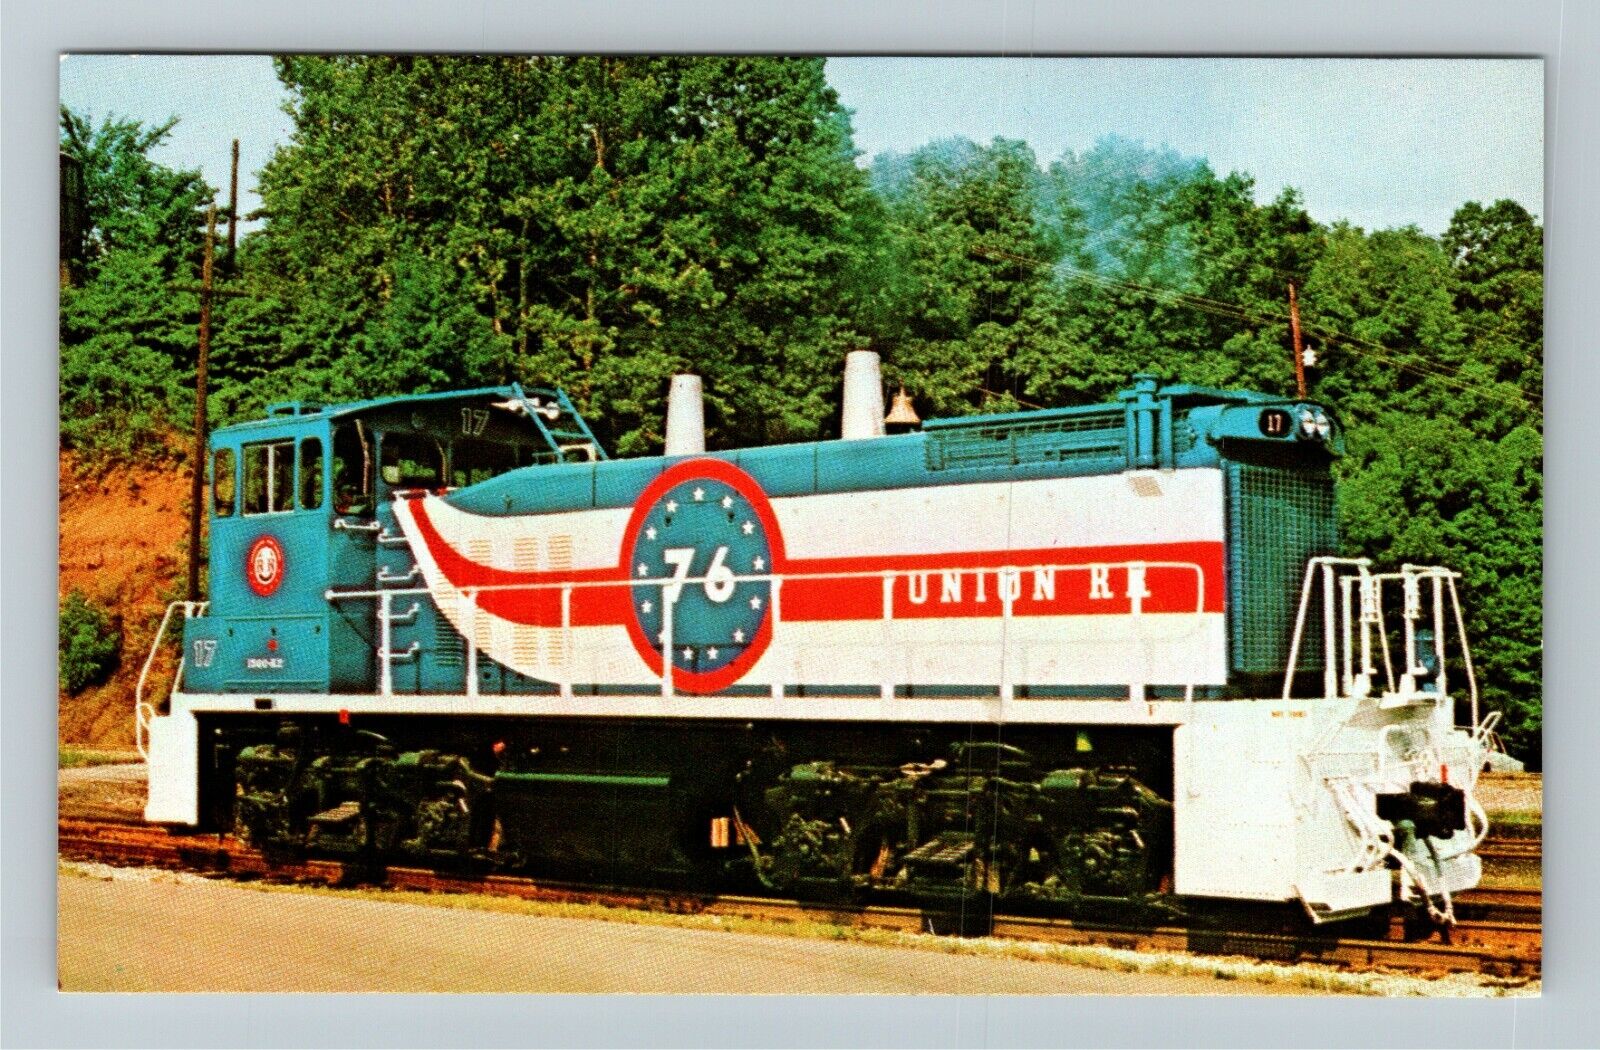 Union Railroad Company\'s Unit Number 17 Locomotive Vintage Souvenir Postcard